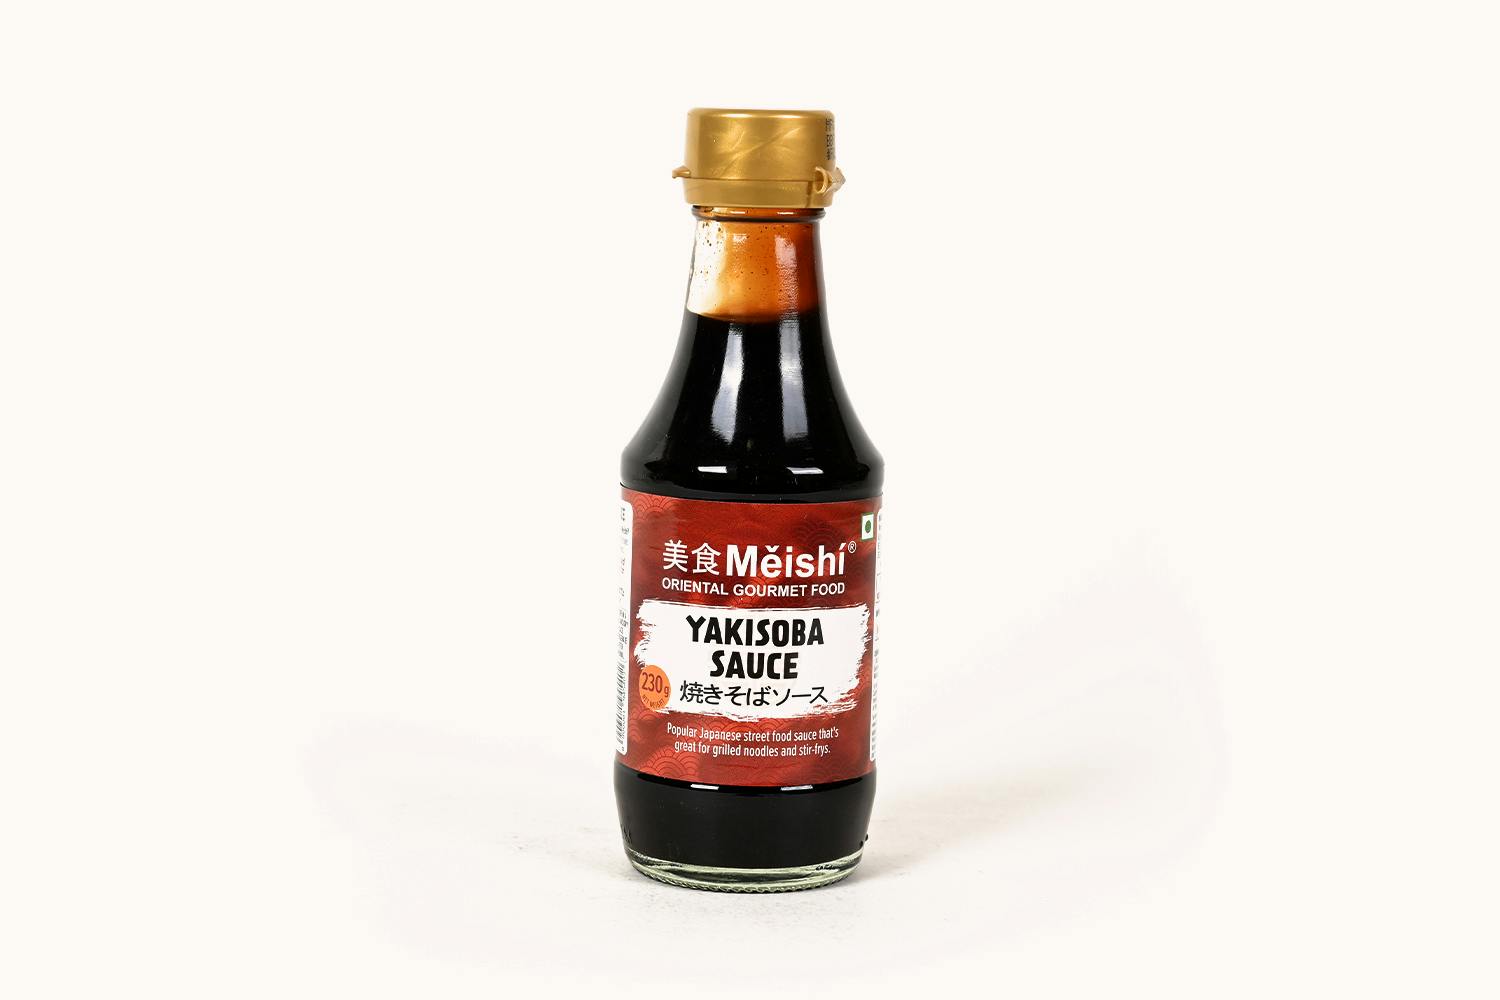 Meishi Yakisoba Sauce